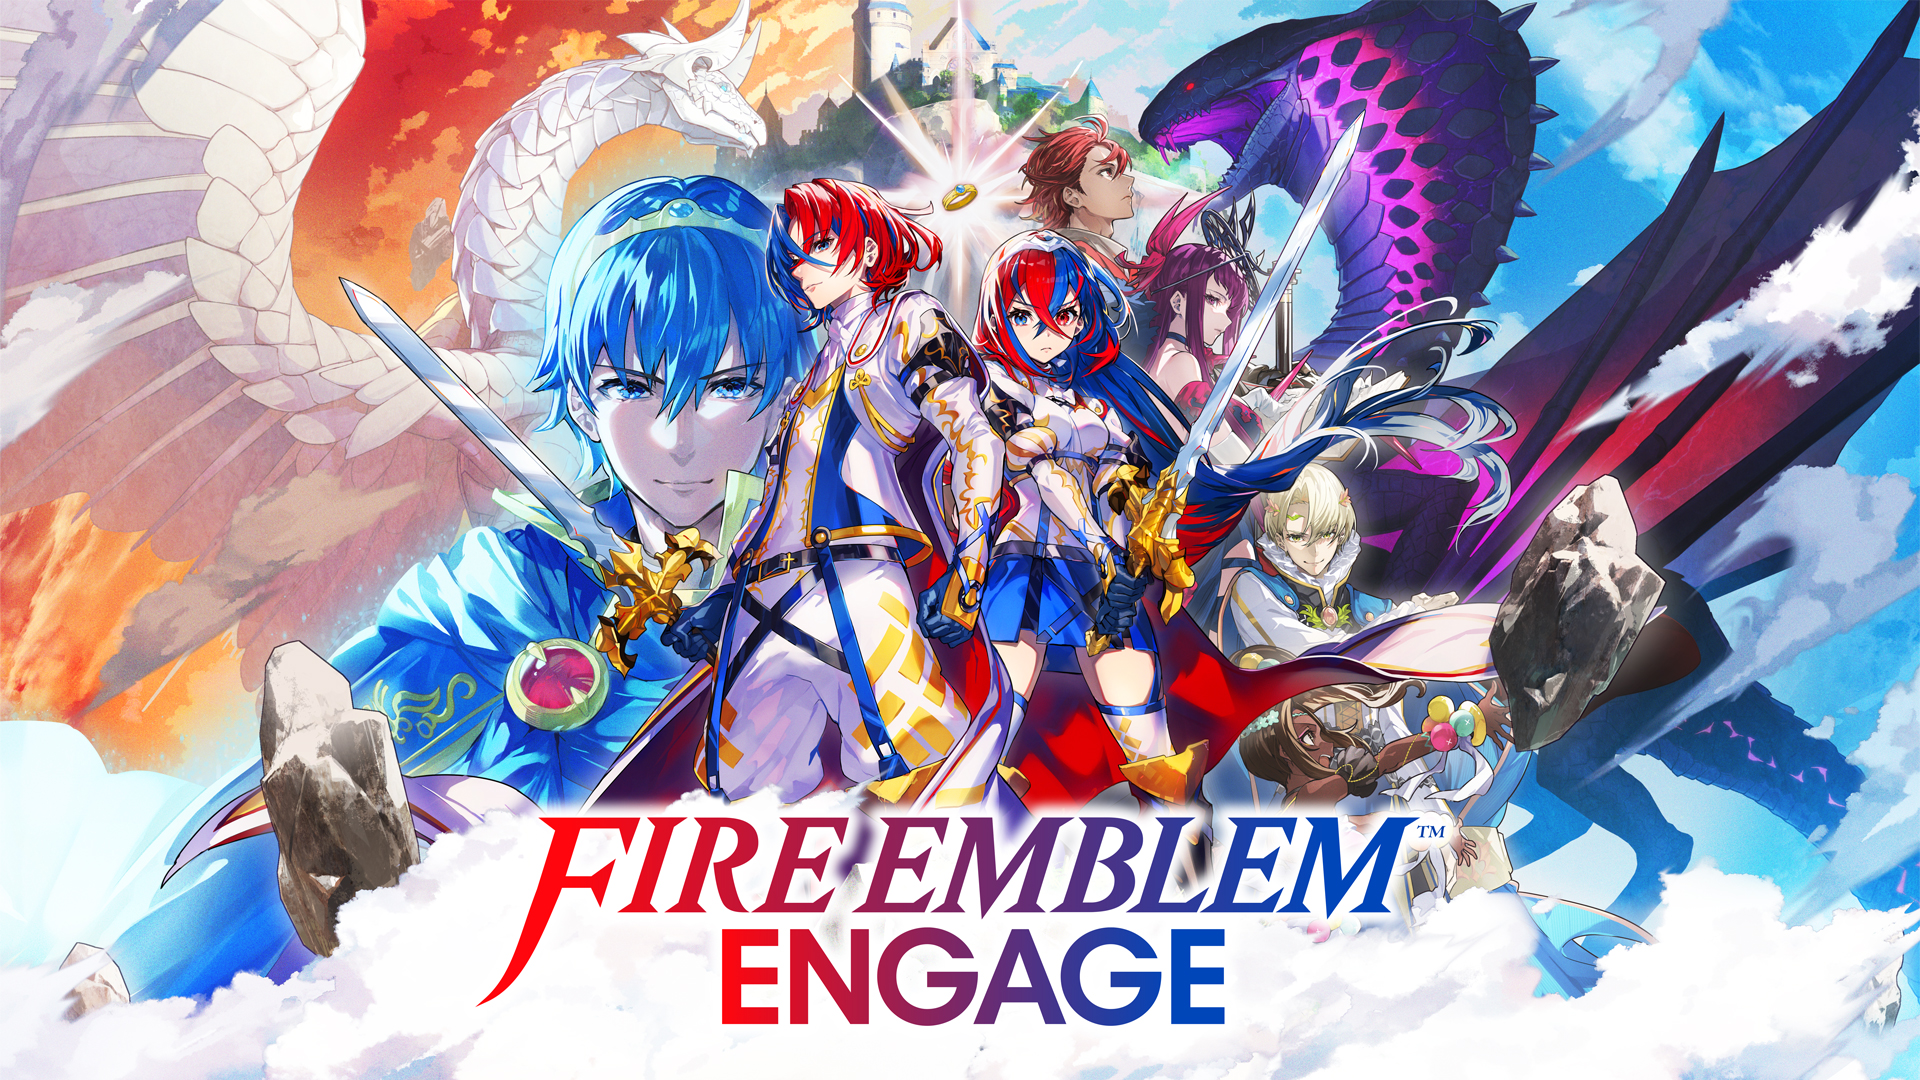 Fire emblem engage key art 2